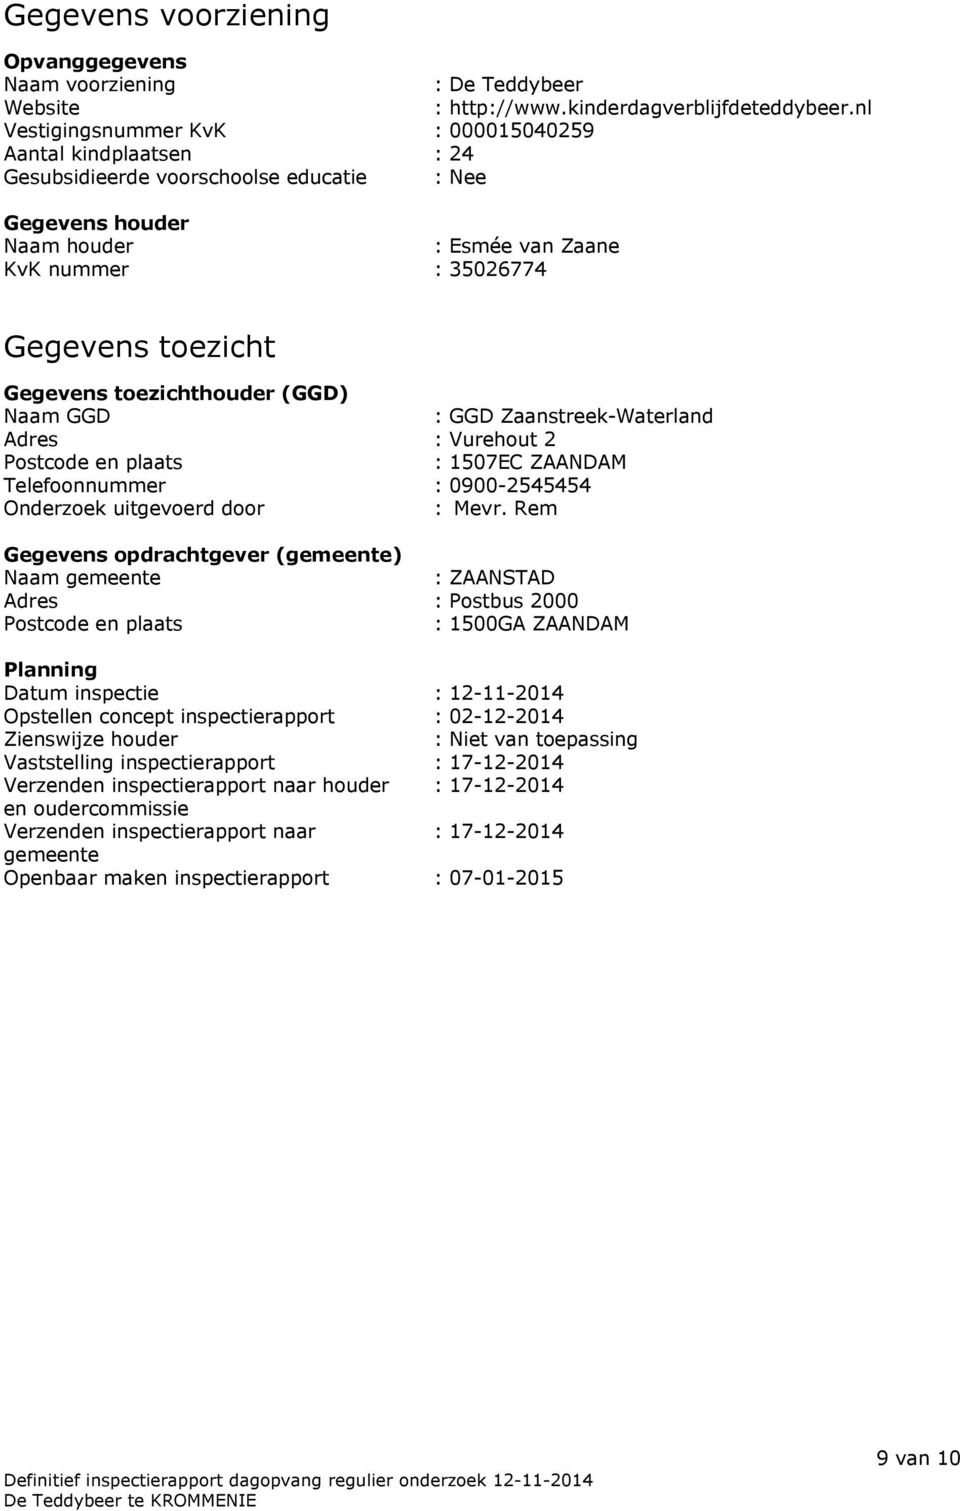 Gegevens toezichthouder (GGD) Naam GGD : GGD Zaanstreek-Waterland Adres : Vurehout 2 Postcode en plaats : 1507EC ZAANDAM Telefoonnummer : 0900-2545454 Onderzoek uitgevoerd door : Mevr.